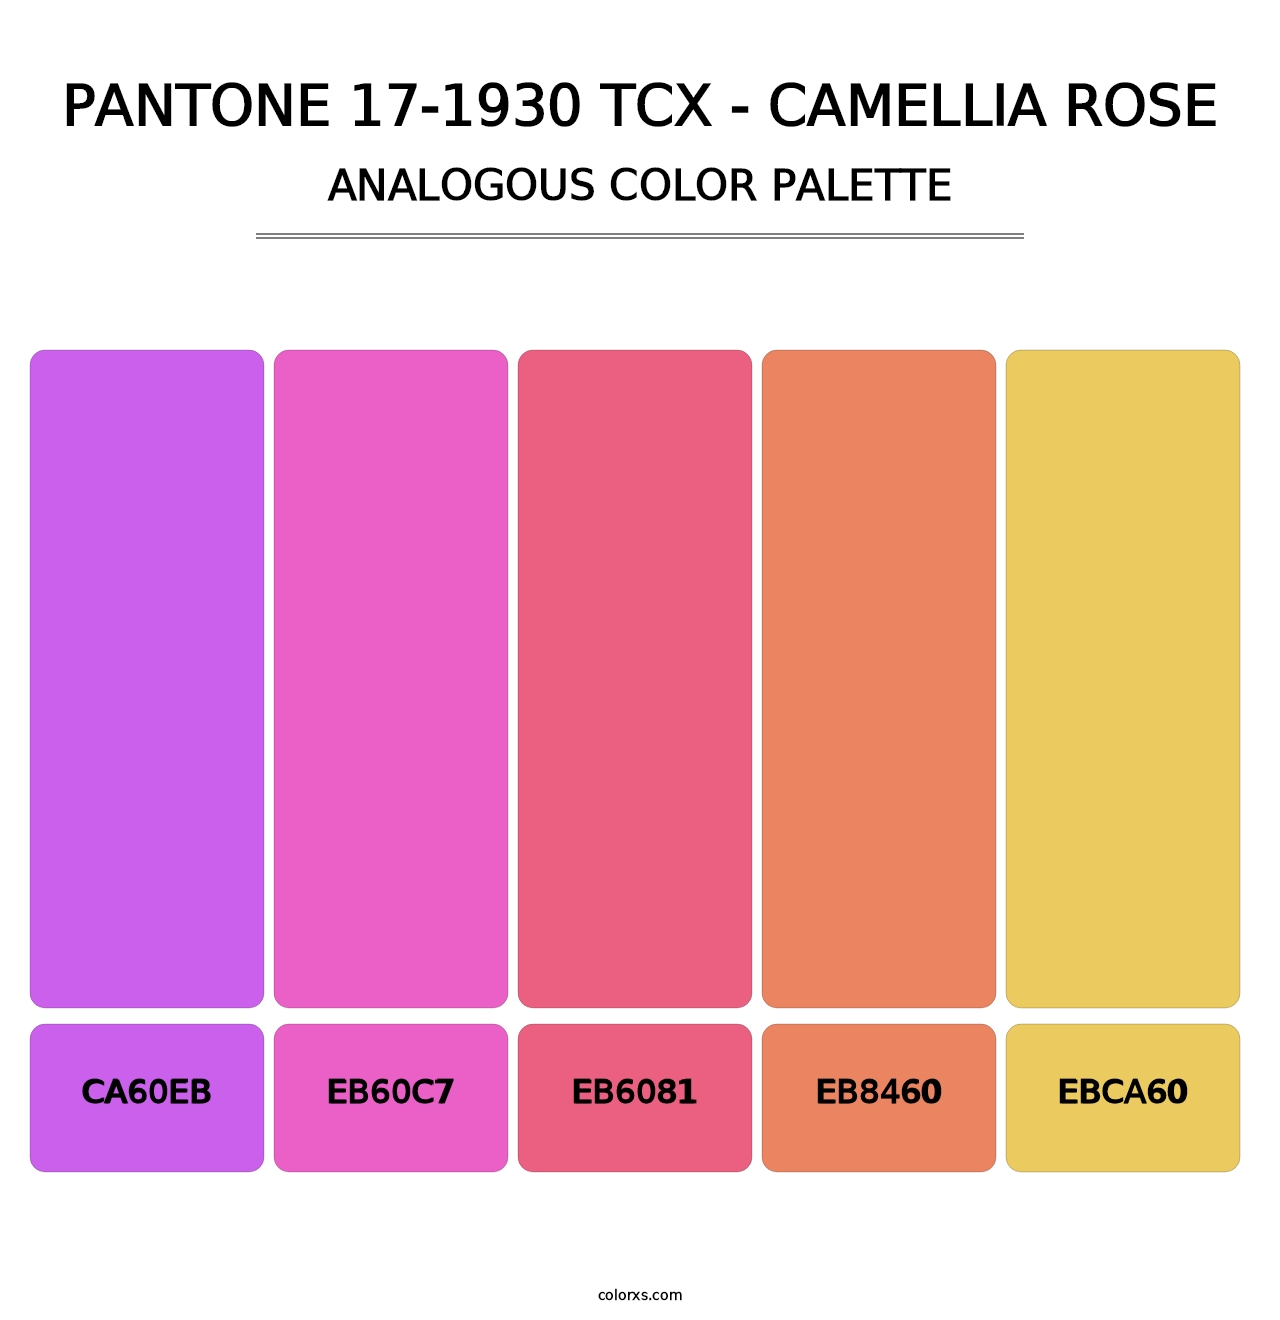 PANTONE 17-1930 TCX - Camellia Rose - Analogous Color Palette